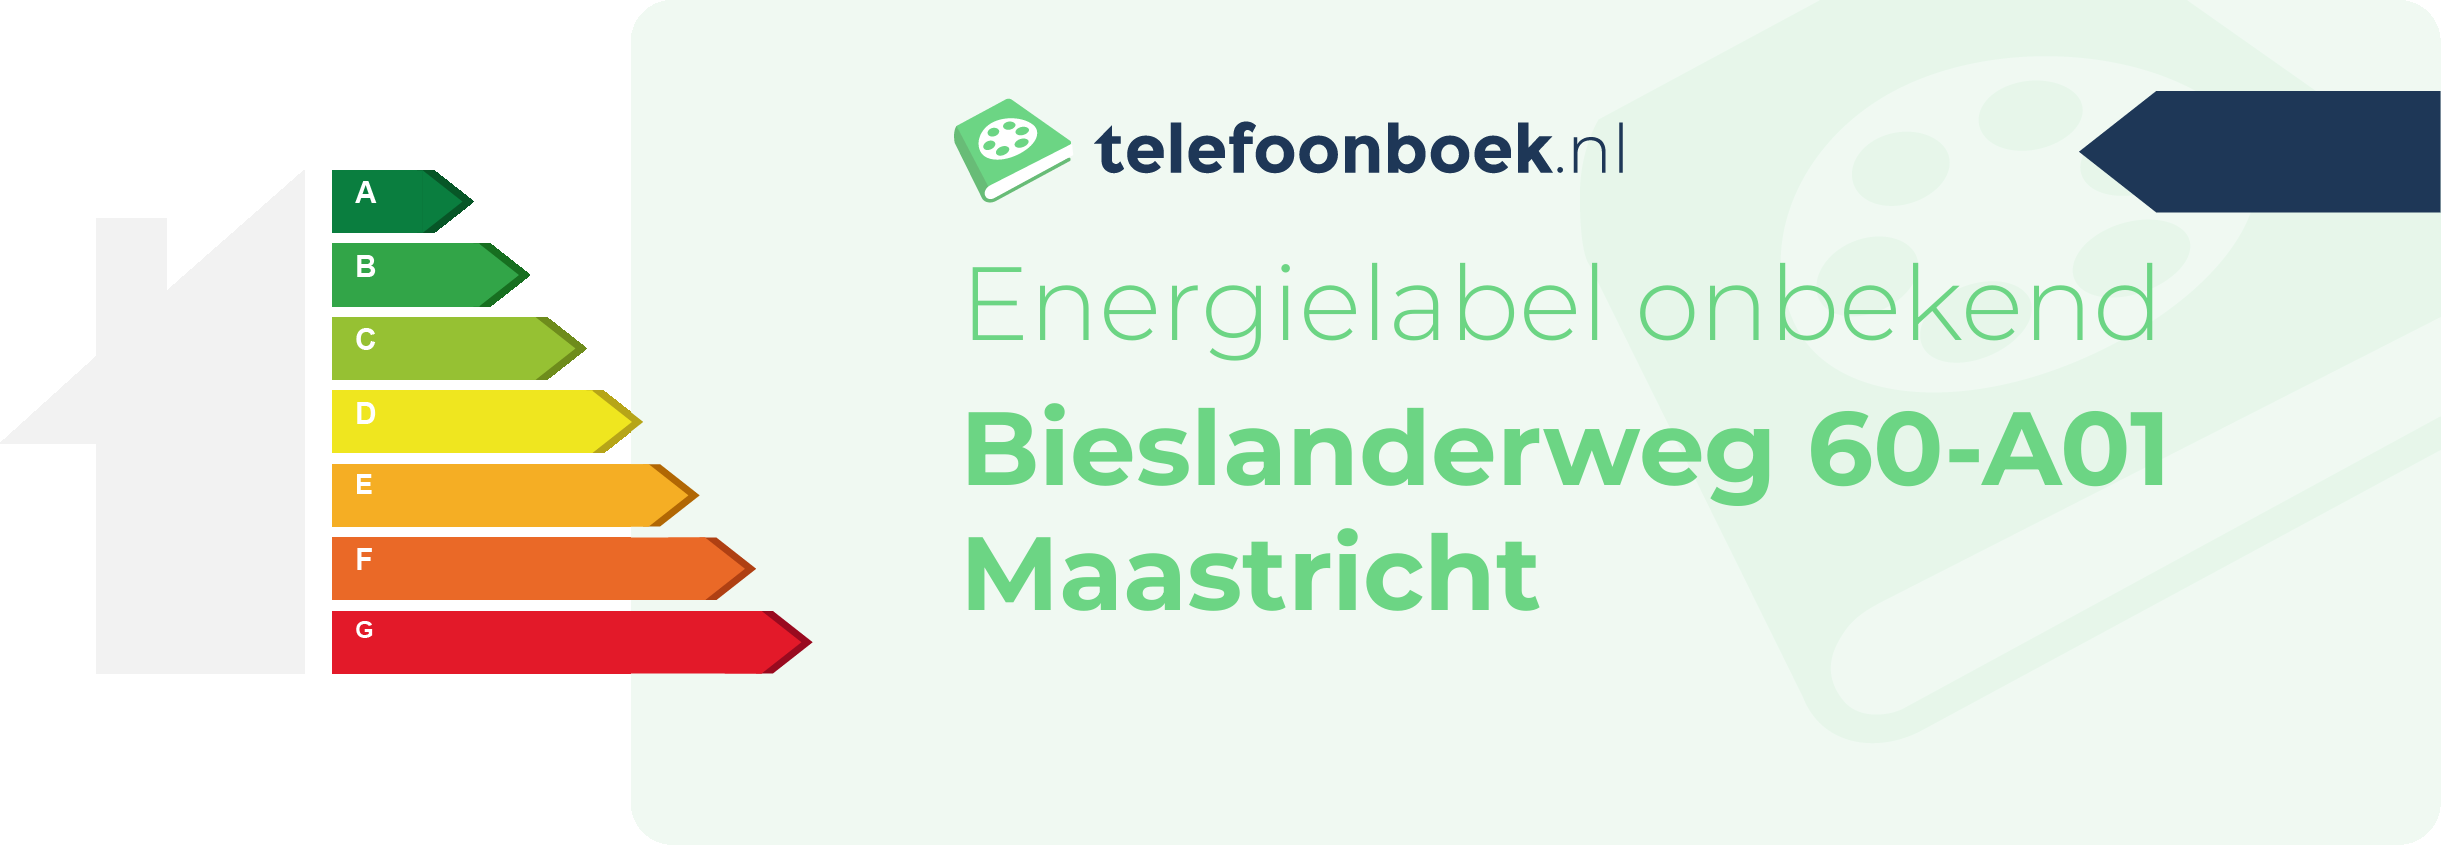 Energielabel Bieslanderweg 60-A01 Maastricht